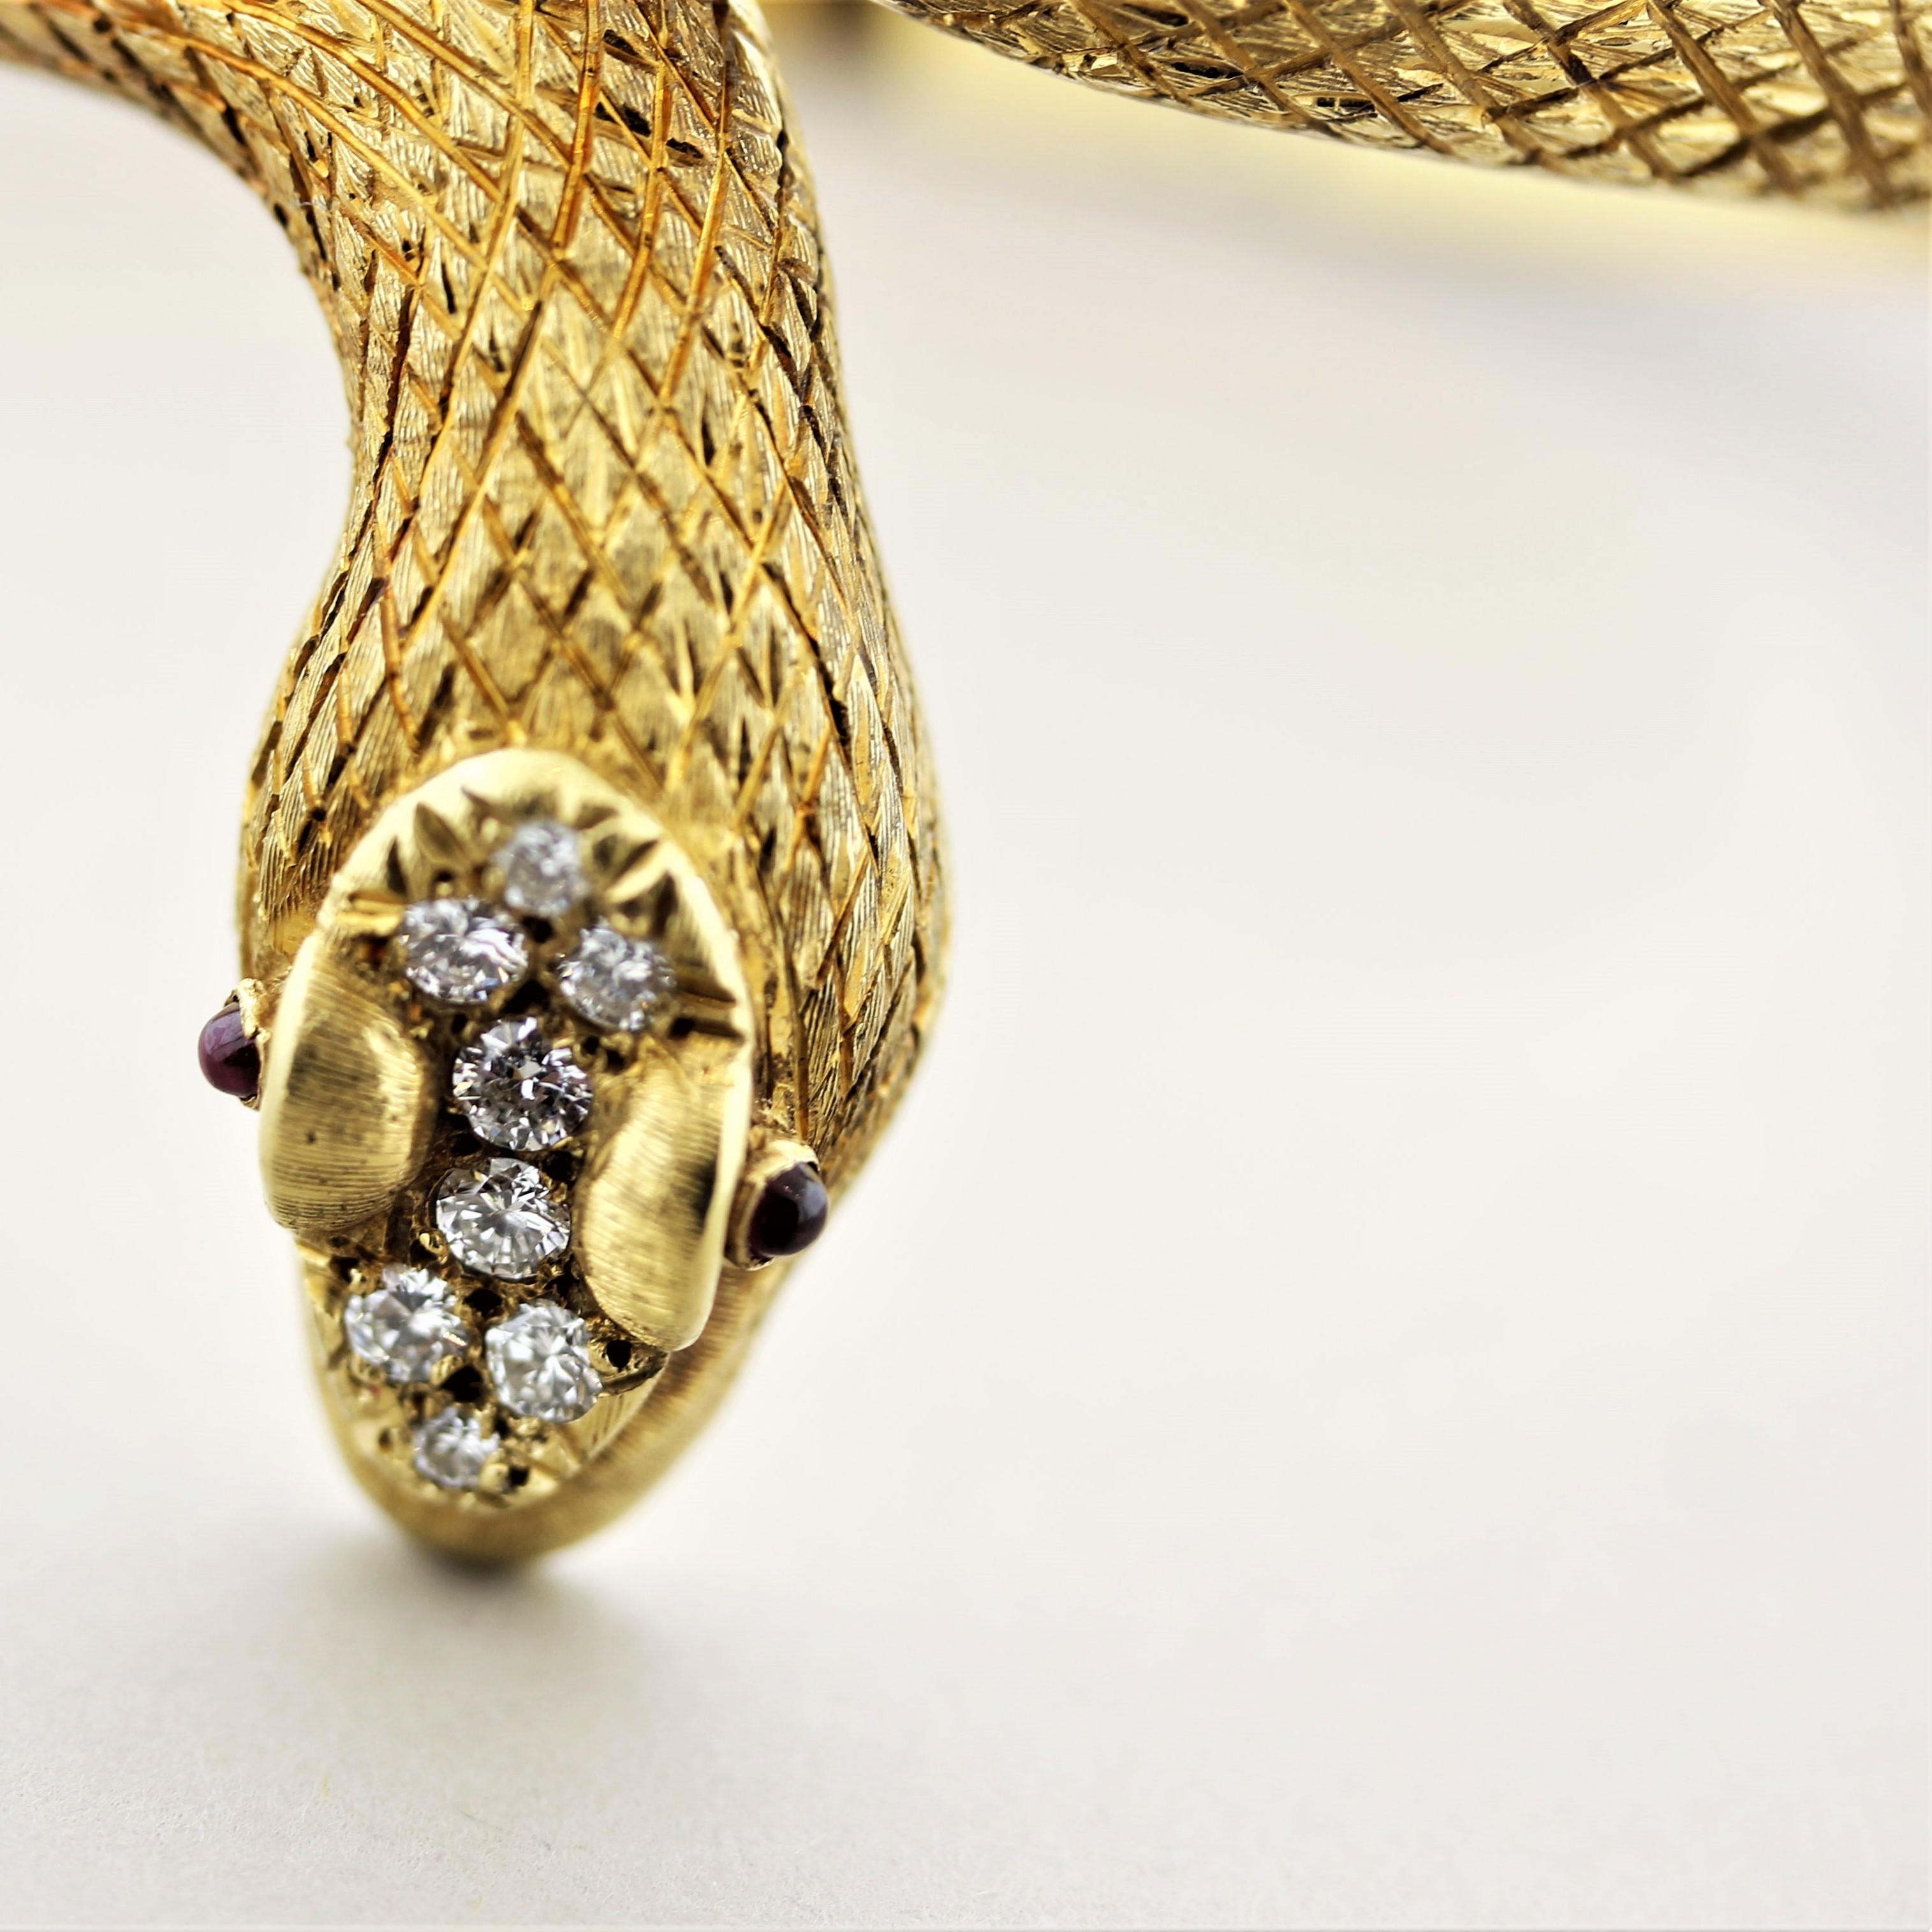 serpent bangle bracelet